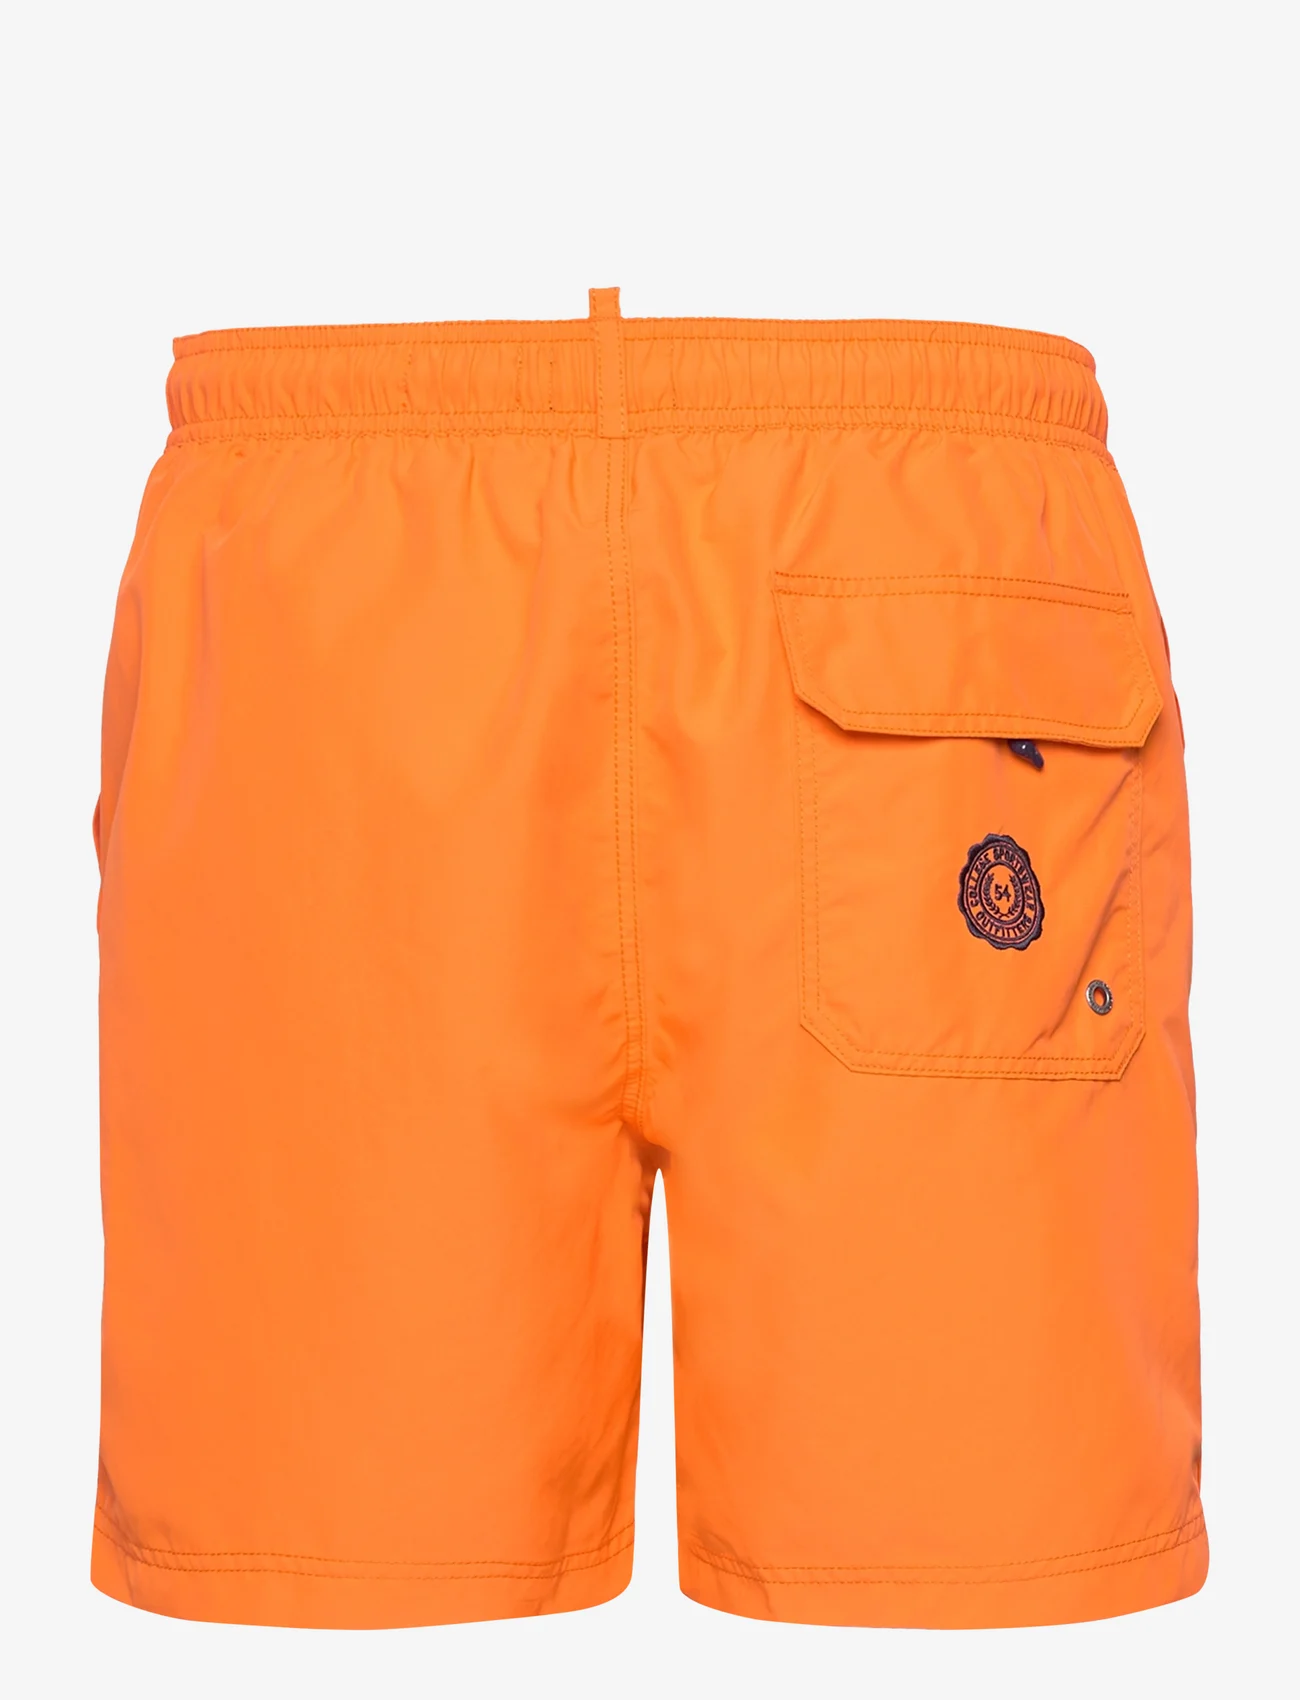 Superdry - VINTAGE POLO SWIMSHORT - shorts - denver orange - 1